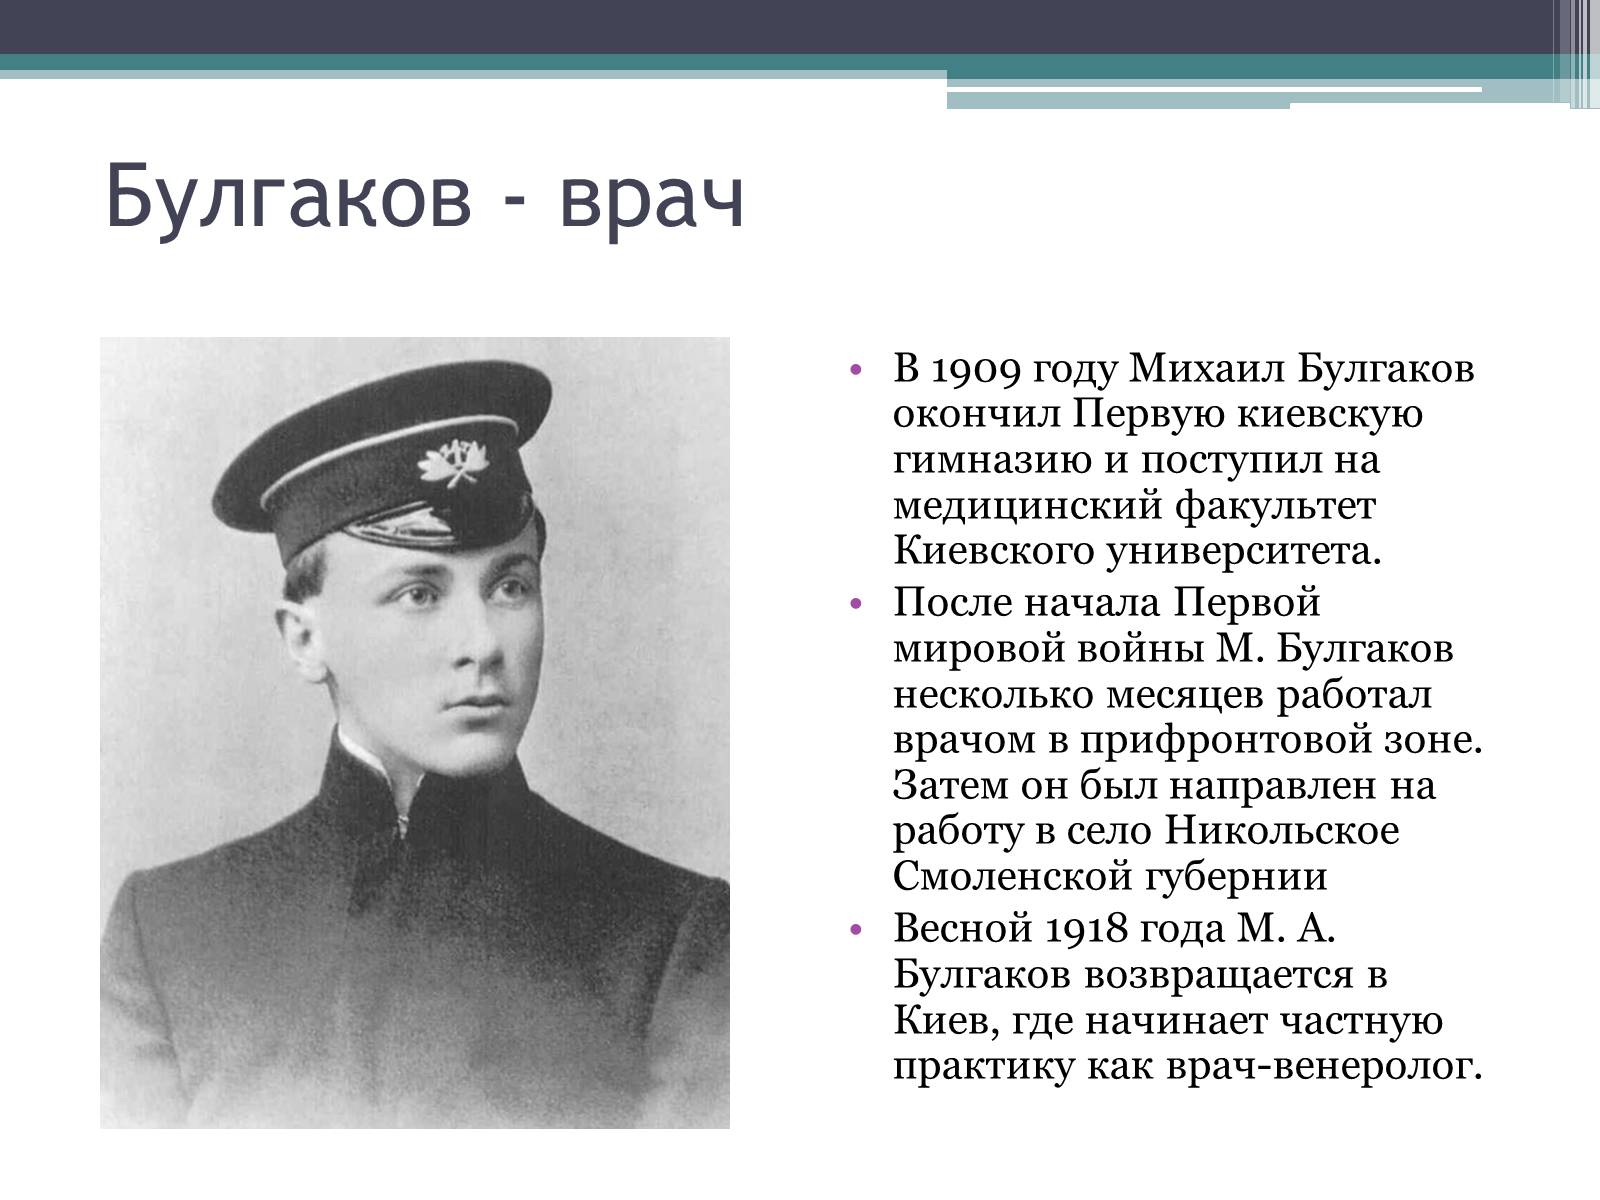 Какое образование получил булгаков. Булгаков врач. Булгаков 1918 год.